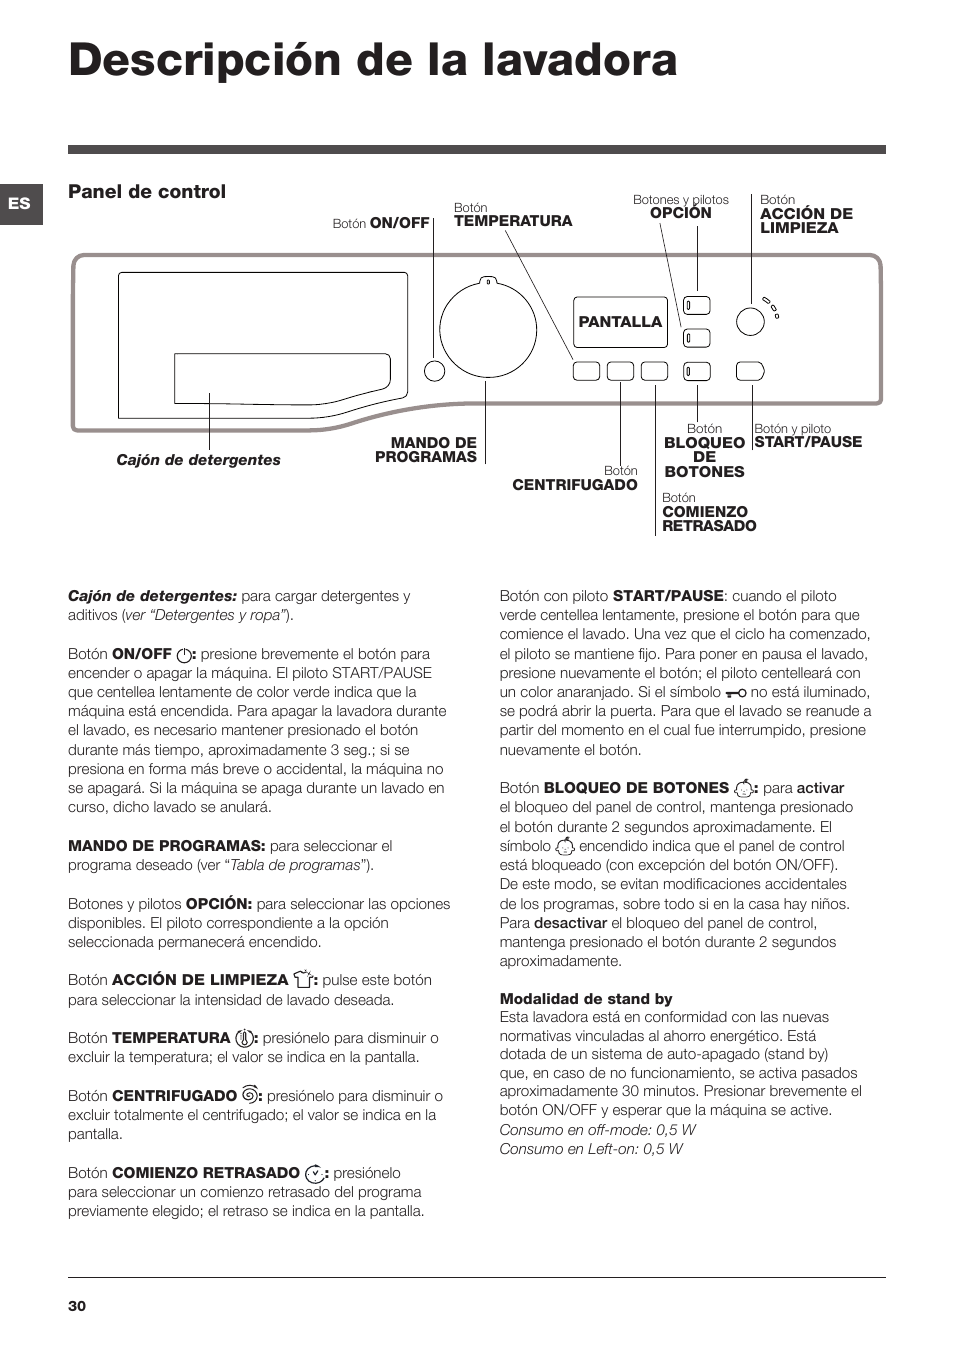 Descripción de la lavadora, Panel de control | Hotpoint Ariston WMG 922  User Manual | Page 30 / 72 | Original mode